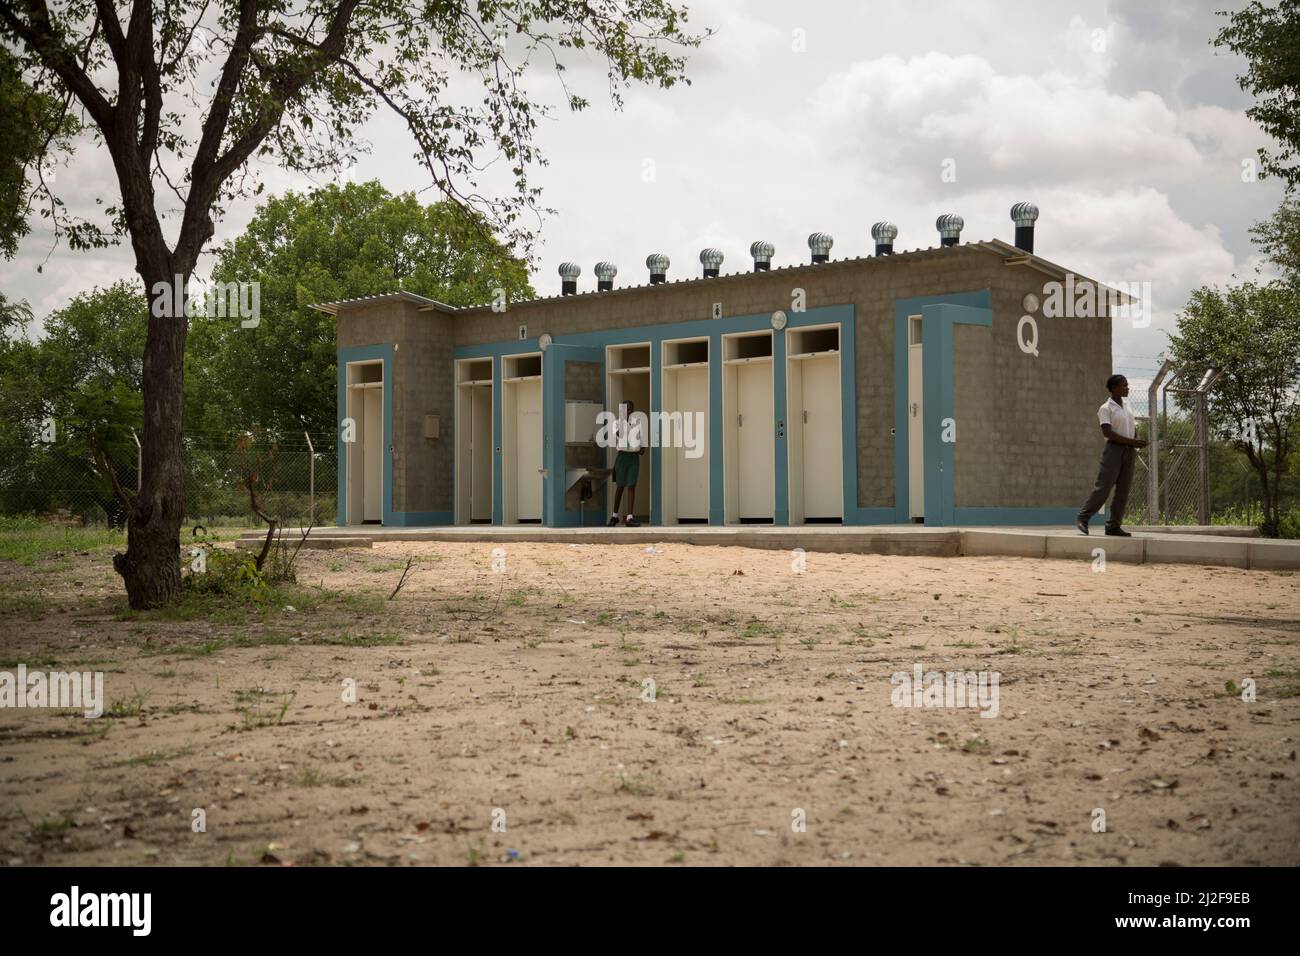 Gli studenti utilizzano i nuovi bagni igienici - latrine esterne - in una scuola elementare pubblica nella regione di Oshana, Namibia, Africa meridionale. Foto Stock